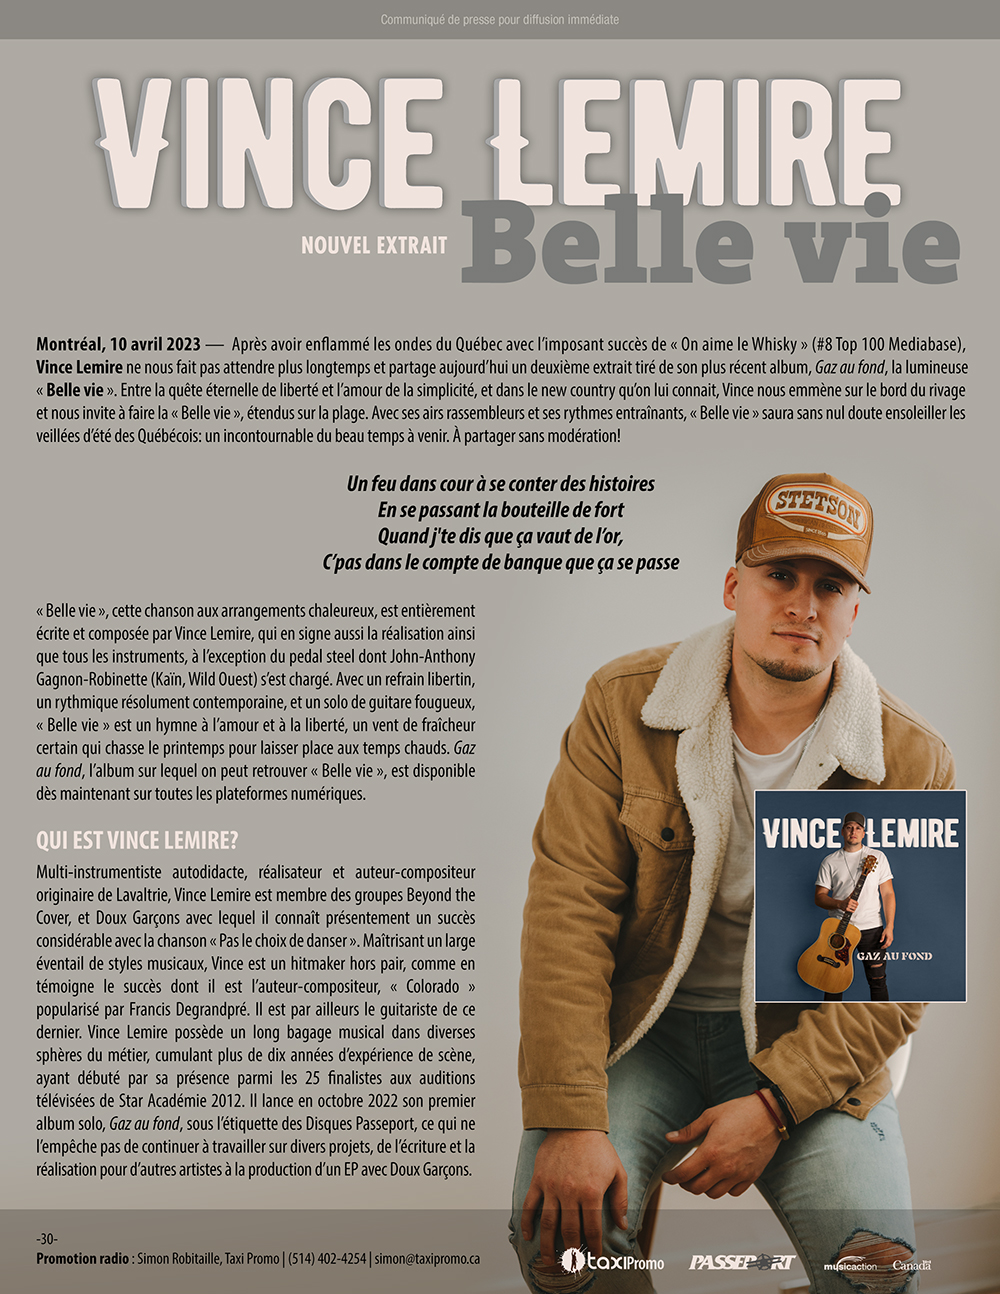 Vince Lemire - Belle vie